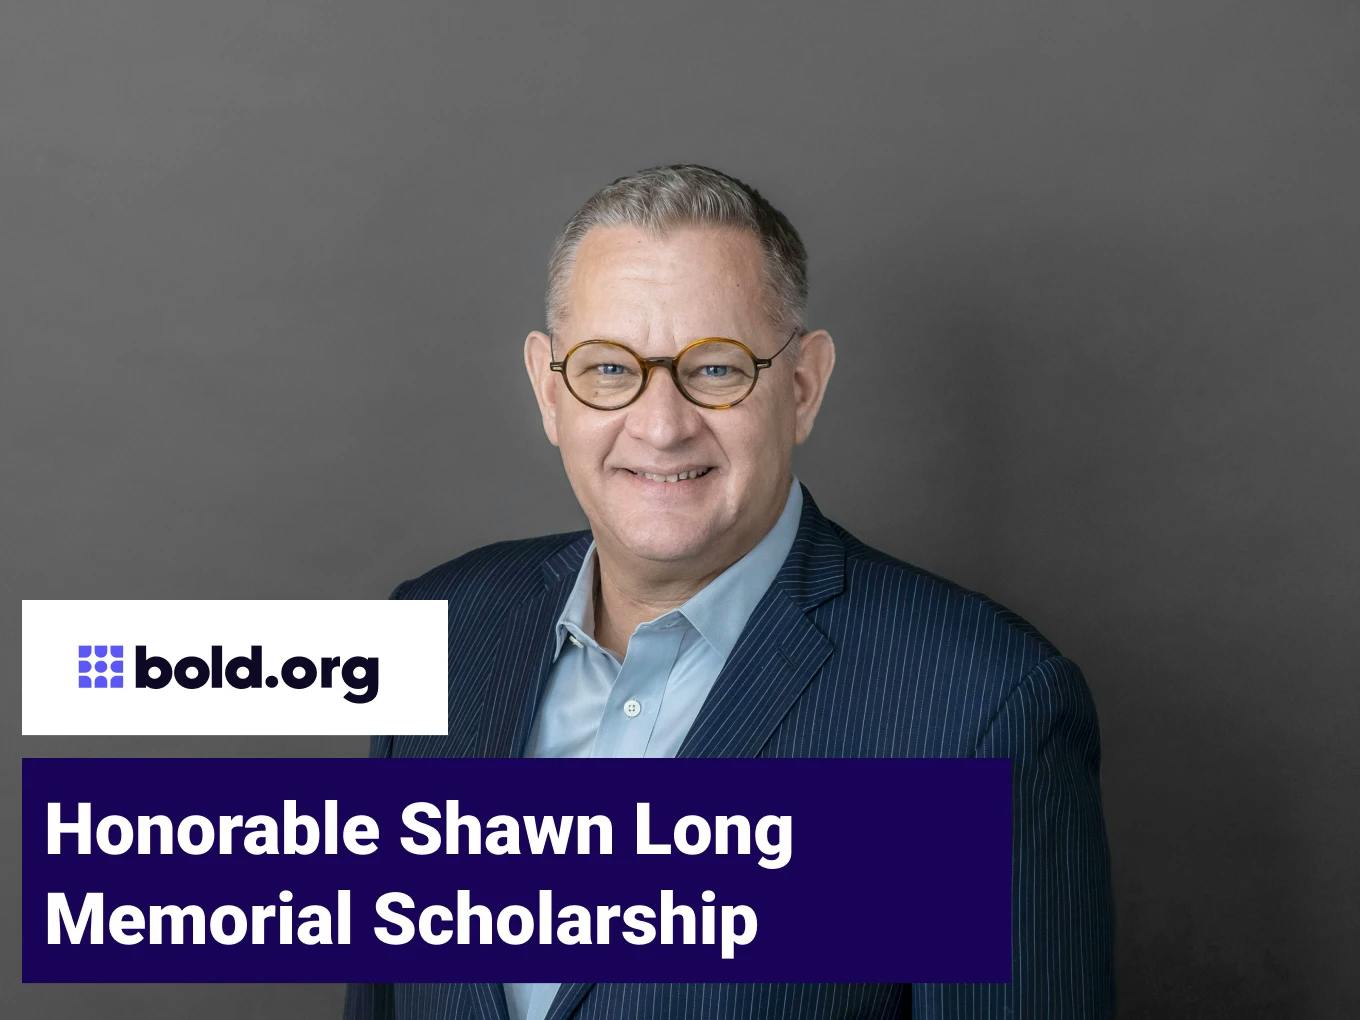 Honorable Shawn Long Memorial Scholarship